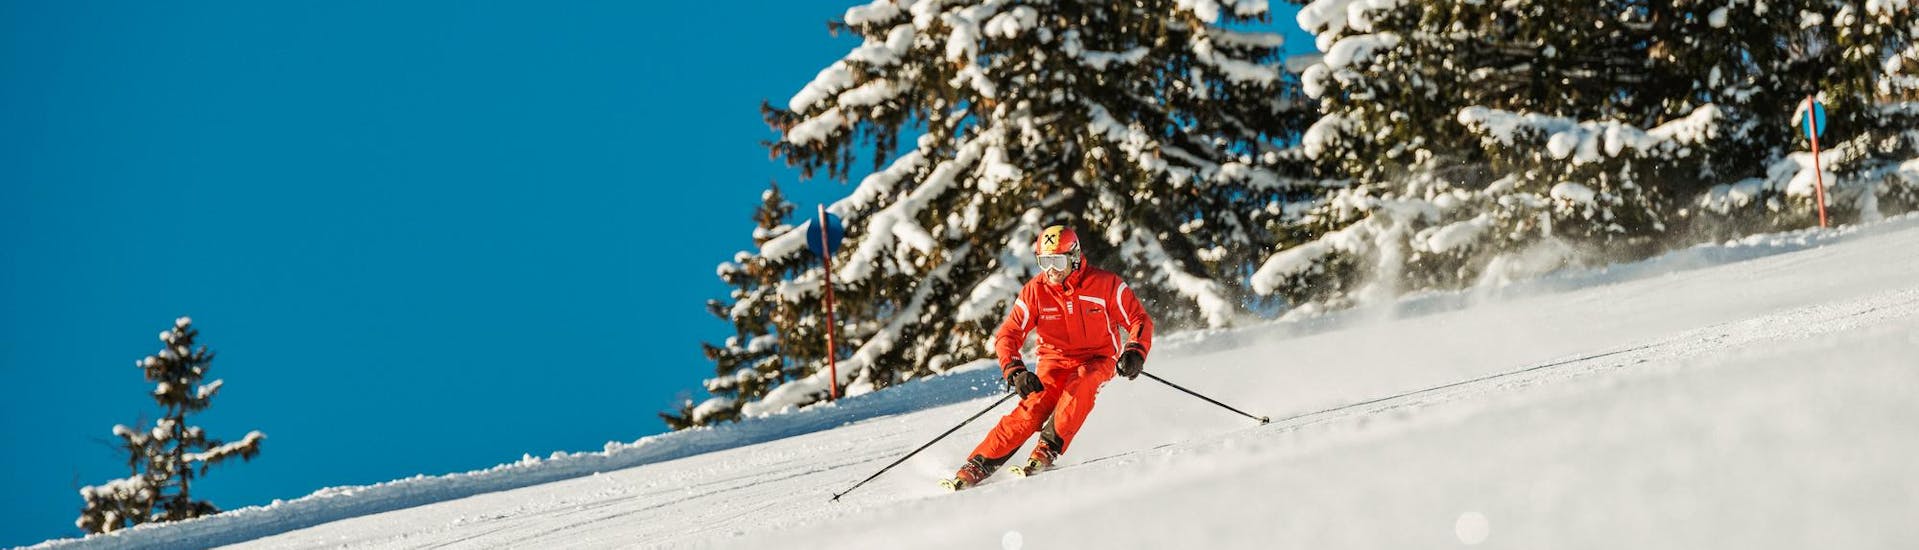 Un skieur descend les belles pistes du domaine skiable d'Achenkirch pendant les cours de ski pour adolescents et adultes pour débutants de l'école de ski Busslehner Achenkirch.